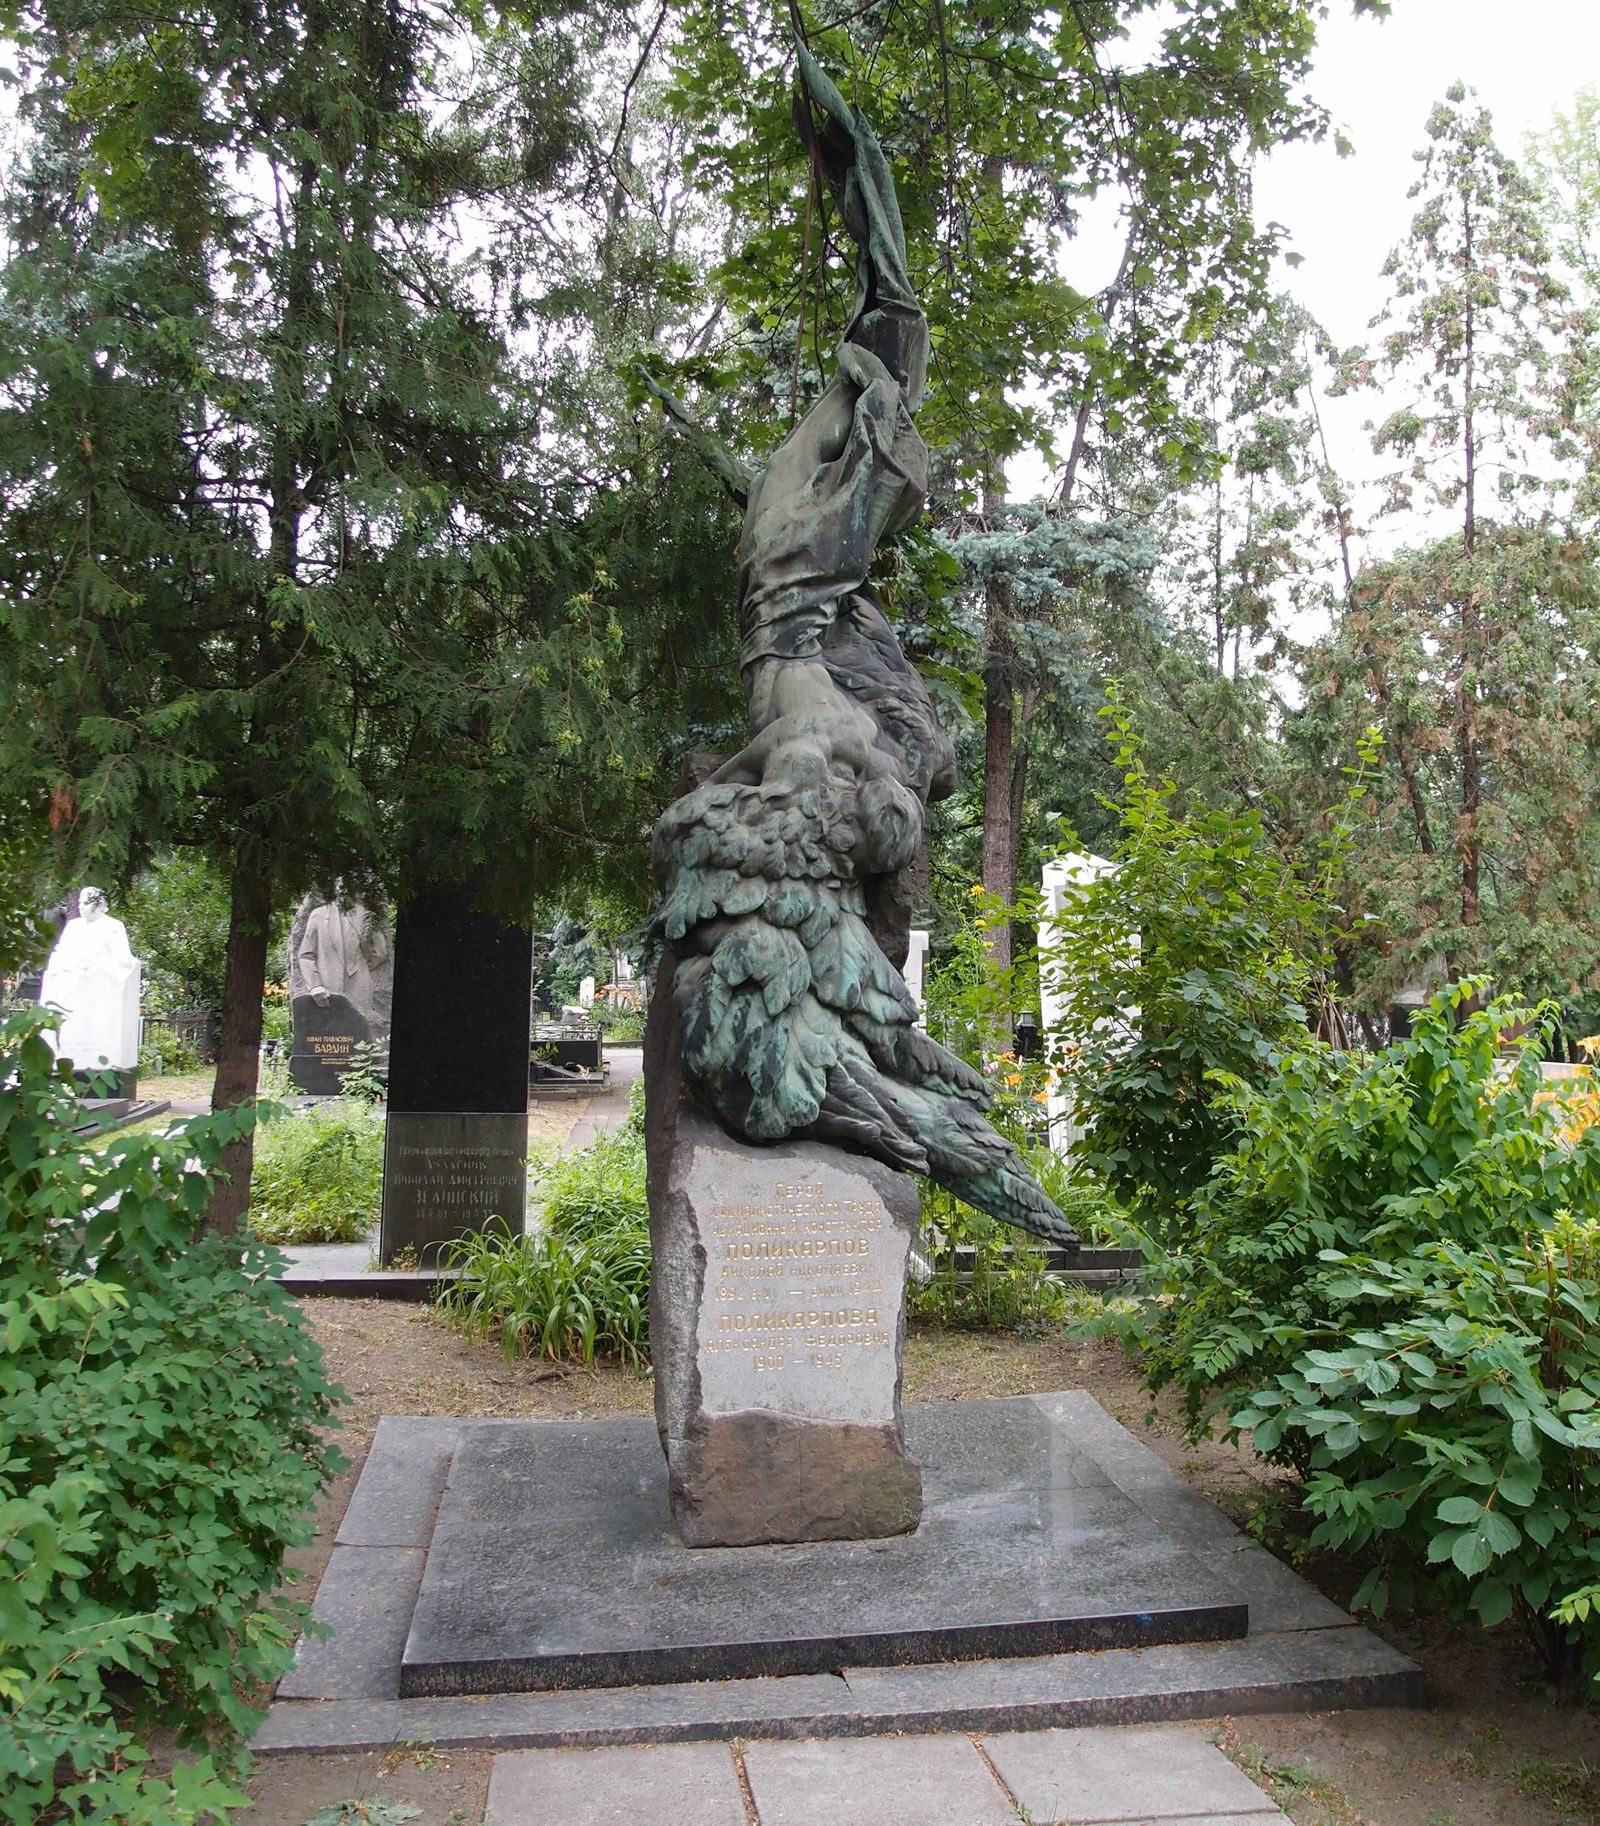 Памятник на могиле Поликарпова Н.Н. (1892–1944), ск. С.Меркуров, композиция «Икар», на Новодевичьем кладбище (1–43–17). Нажмите левую кнопку мыши, чтобы увидеть фрагменты памятника крупно.